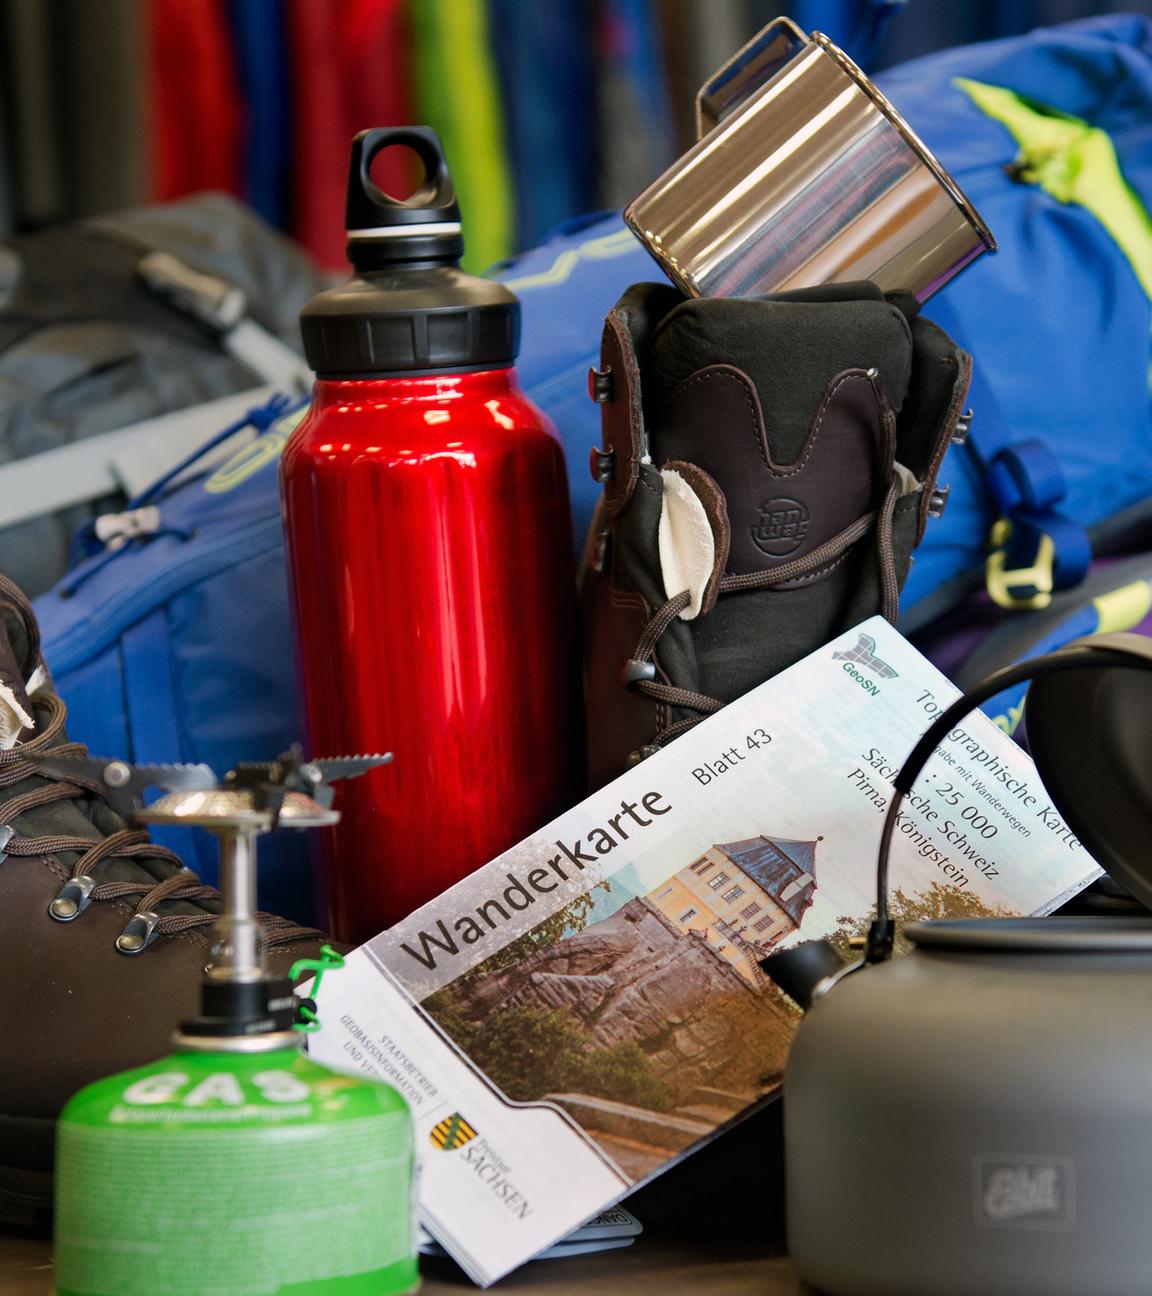 Verschiedene Dinge wie Becher, Trinkflasche oder Gaskocher, die für Wander- und Campingausrüstung notwendig sind.